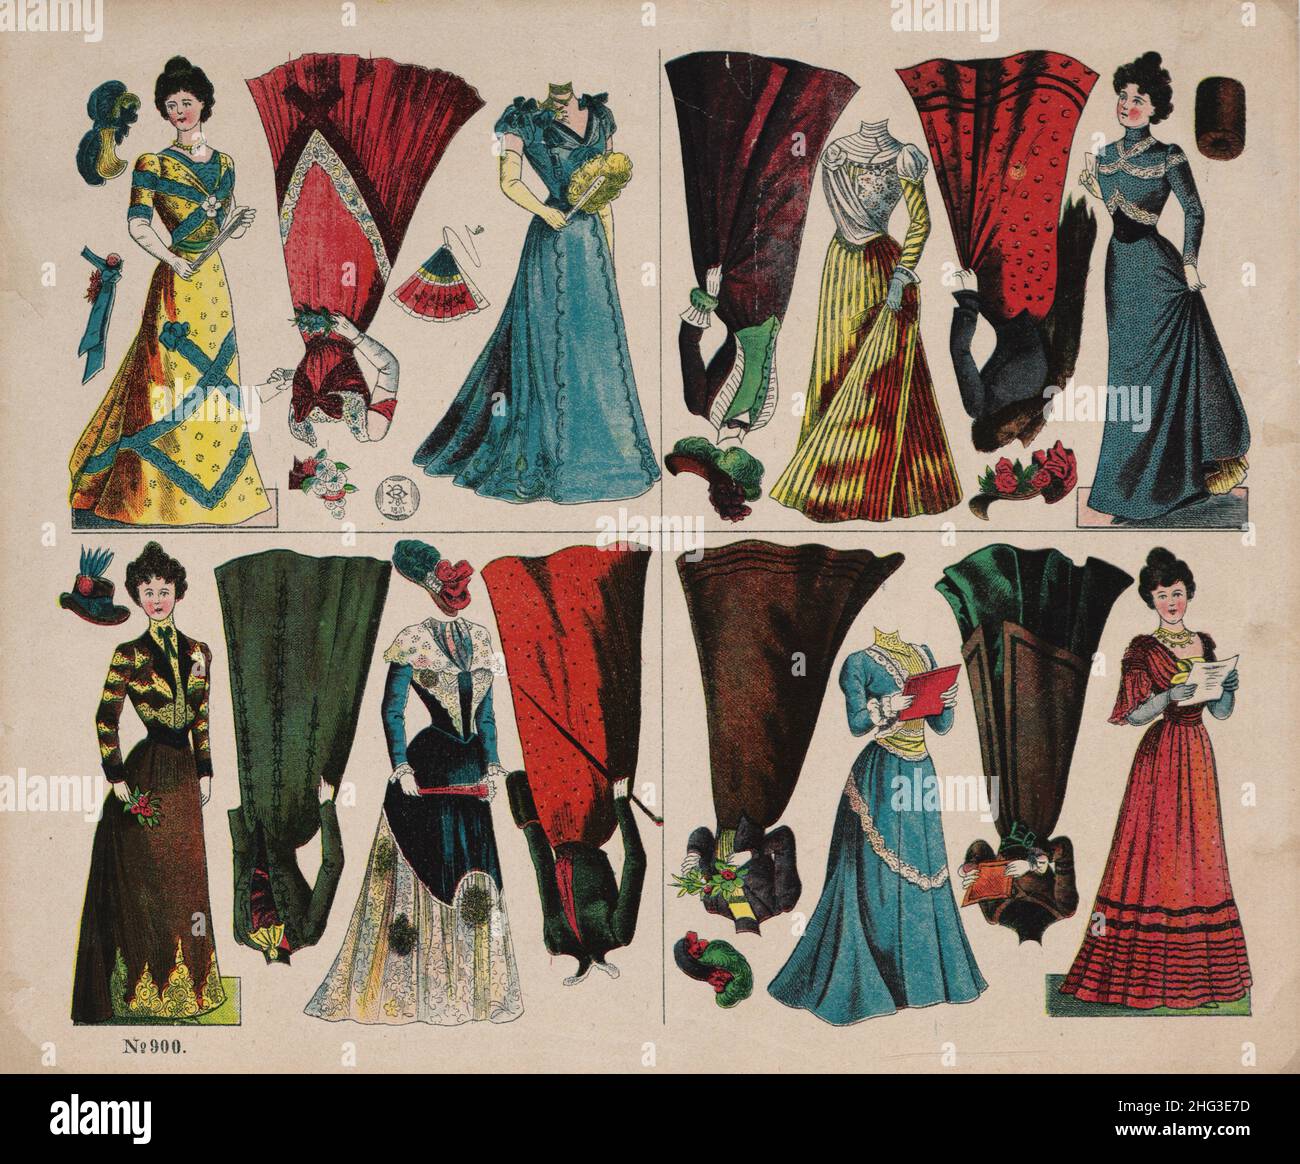 Les 19th siècles vintage illustrations de poupées habillées pour la coupe, 1914 la mode allemande de 1914, la mode allemande des femmes de 1914, vintage wome allemand Banque D'Images